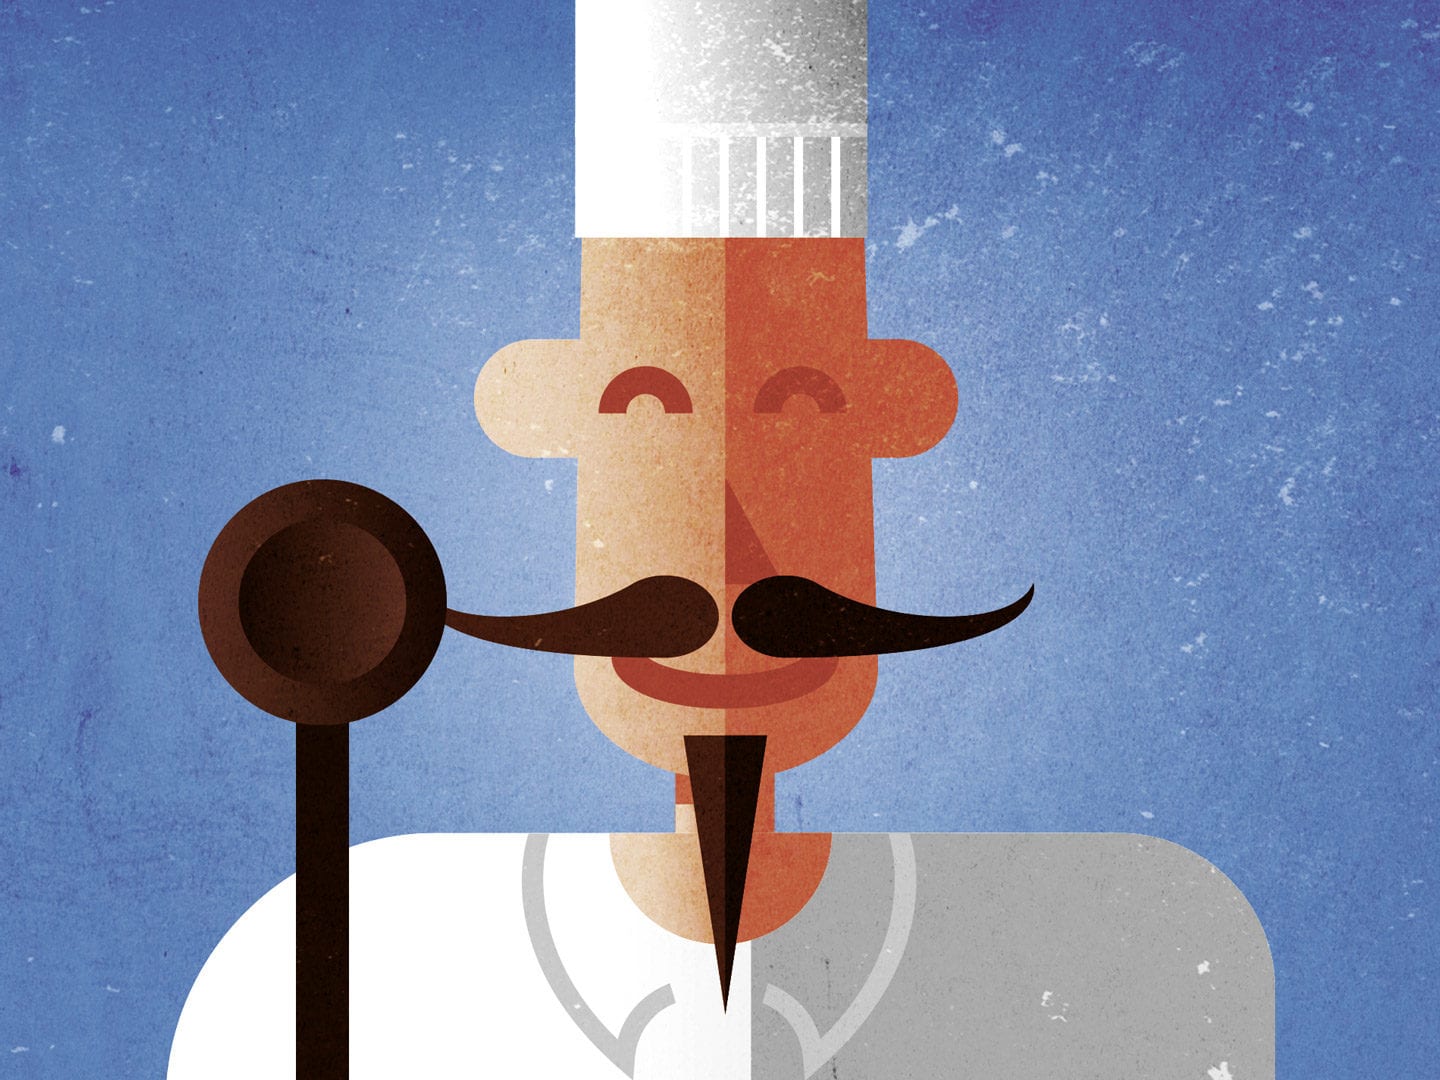 Eine Illustration von einem Koch